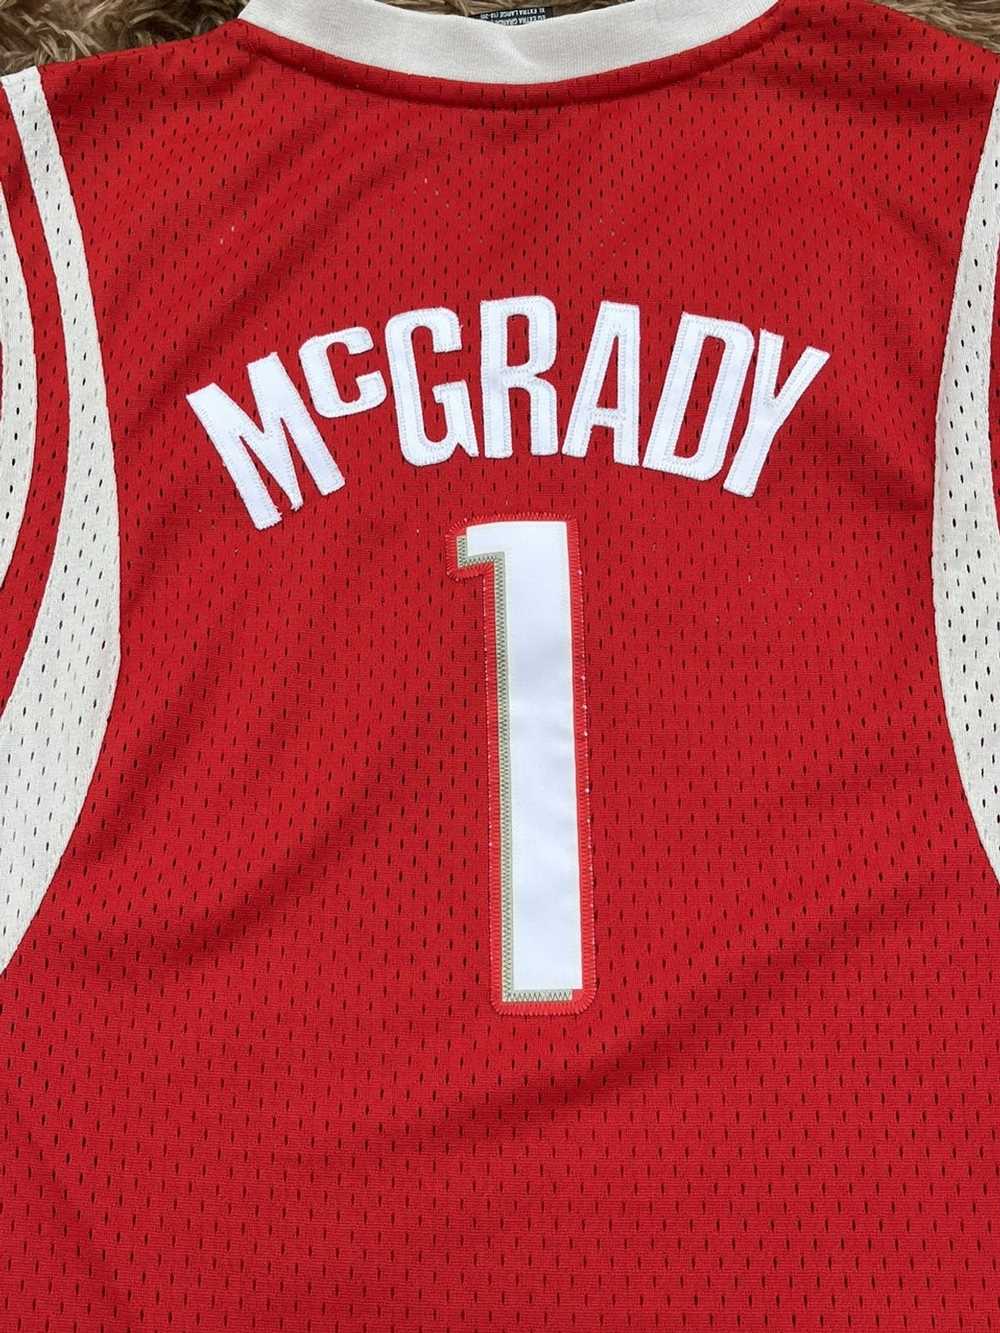 NBA × Reebok Tracy McGrady Stitched reebok jersey - image 5